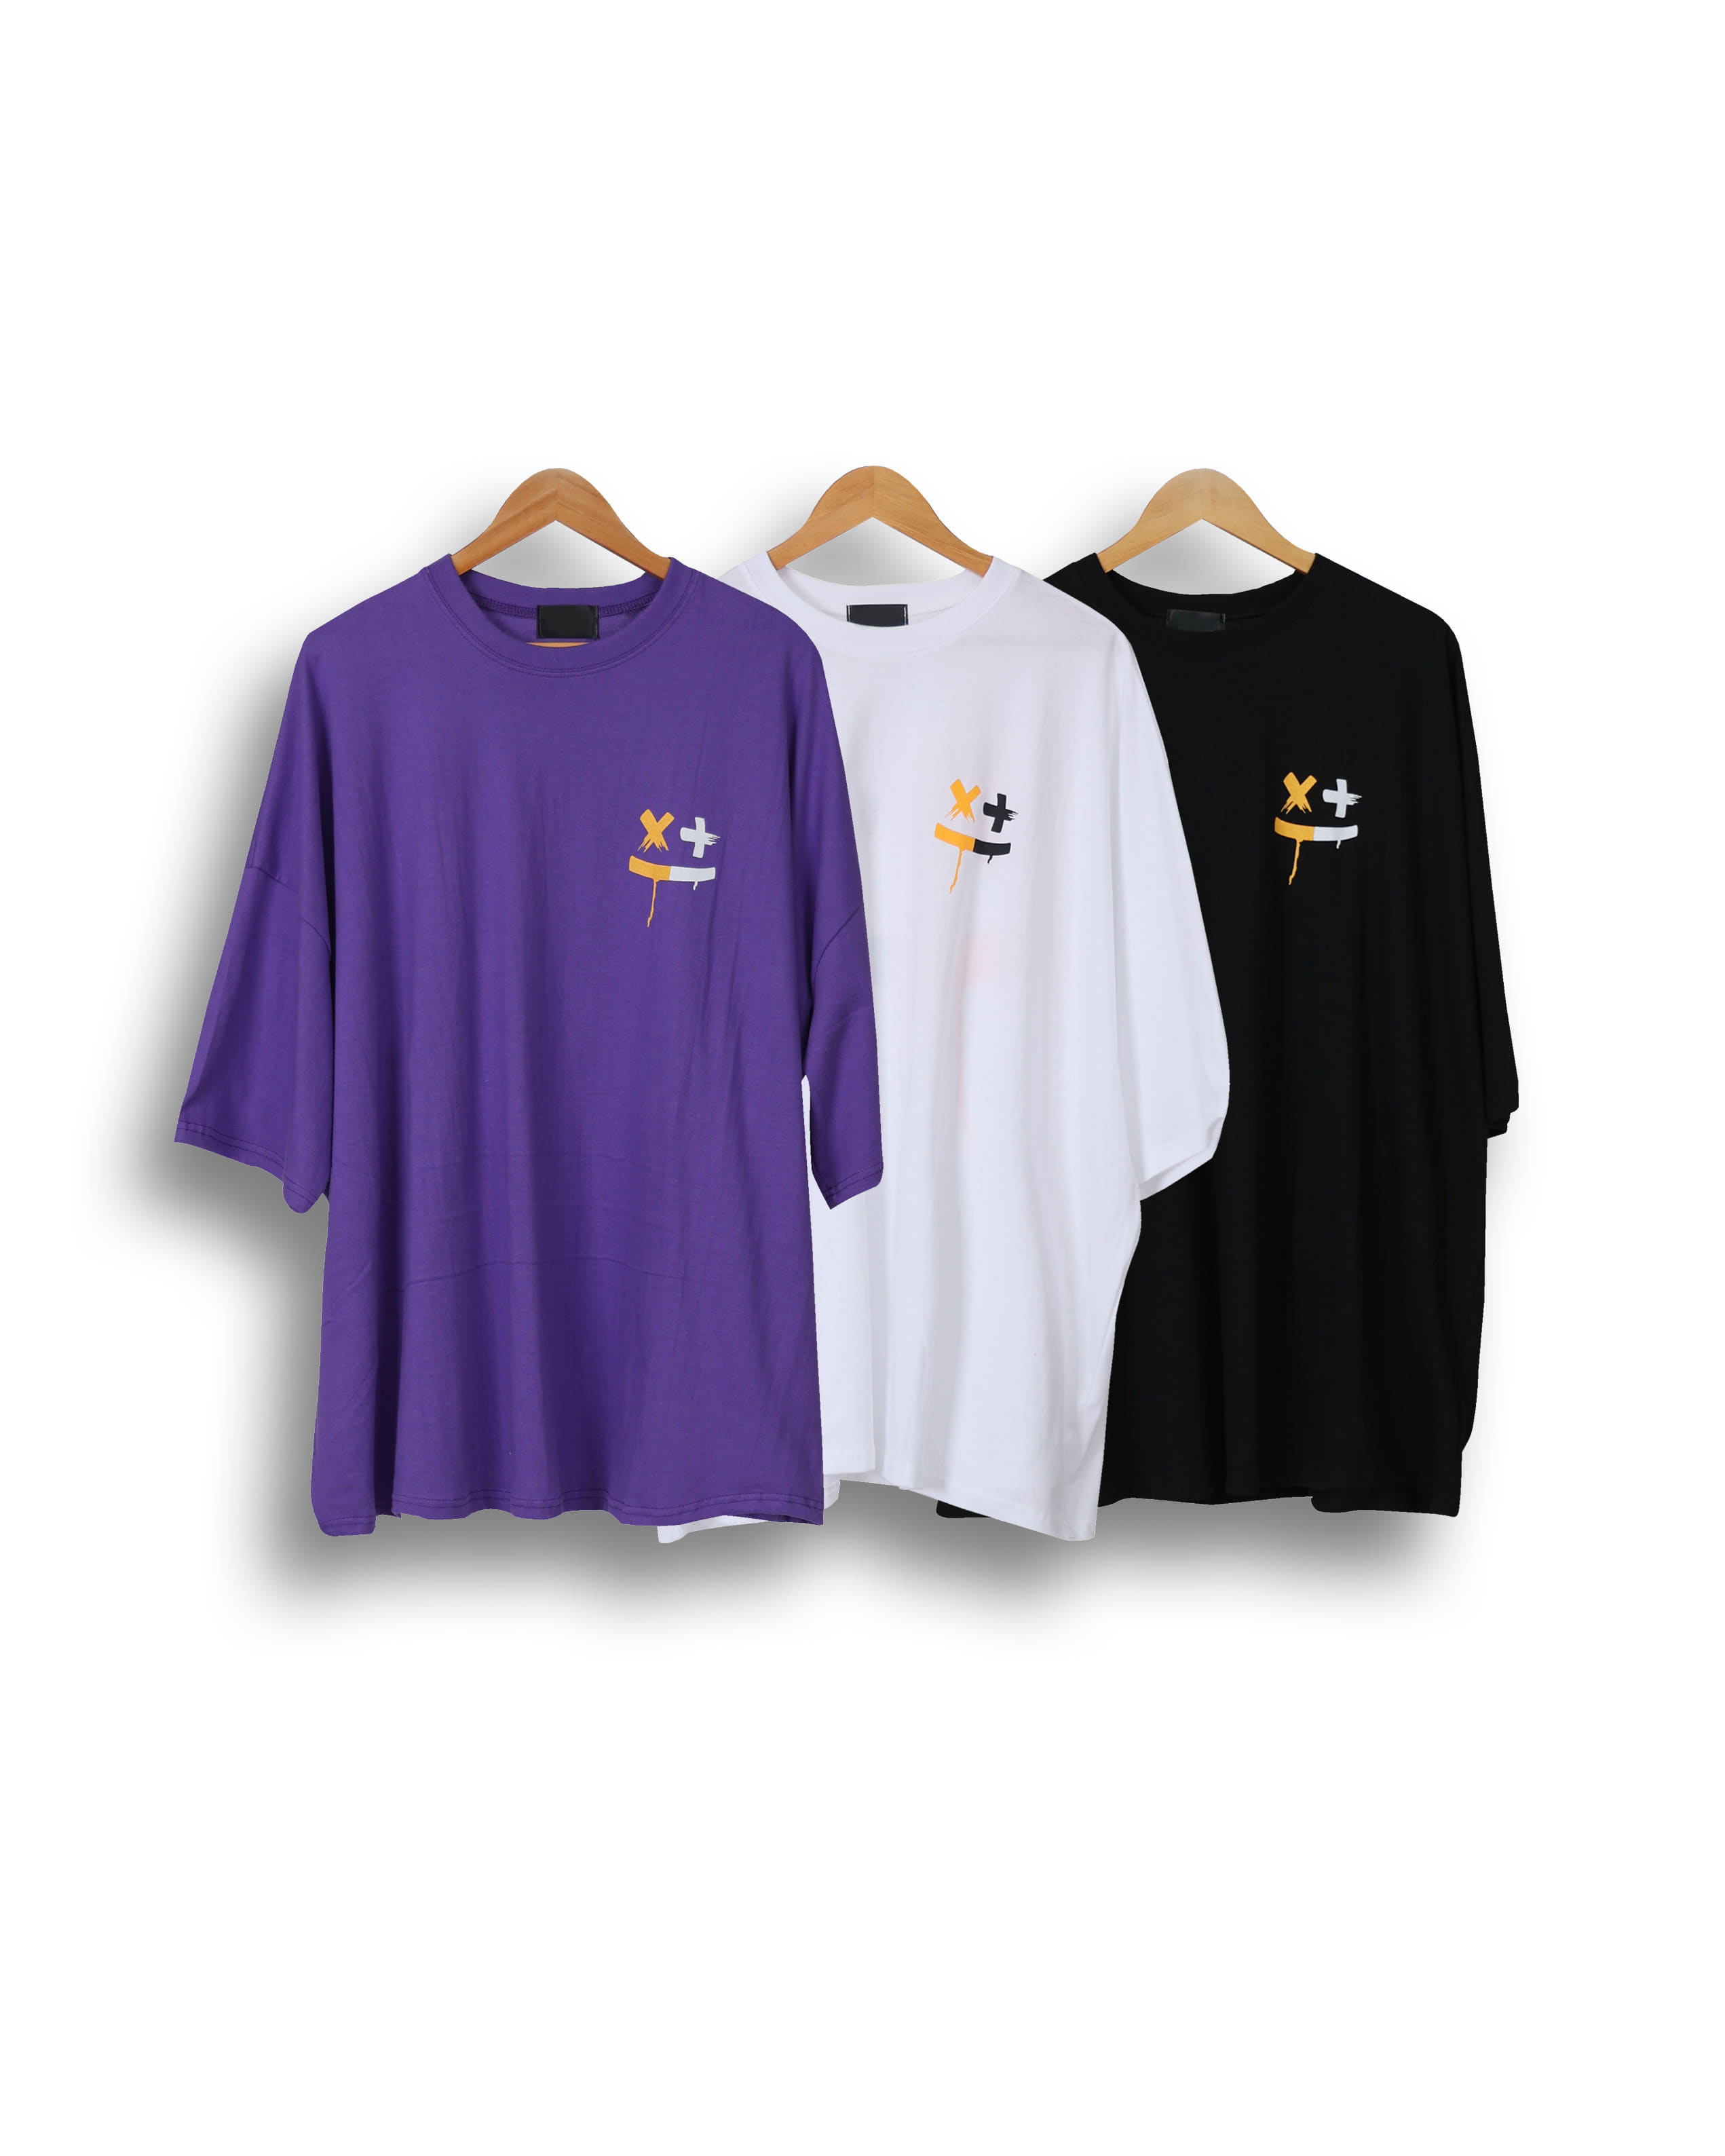 TAKE Color Multi Print Smile T Shirts (Black/Purple/White)